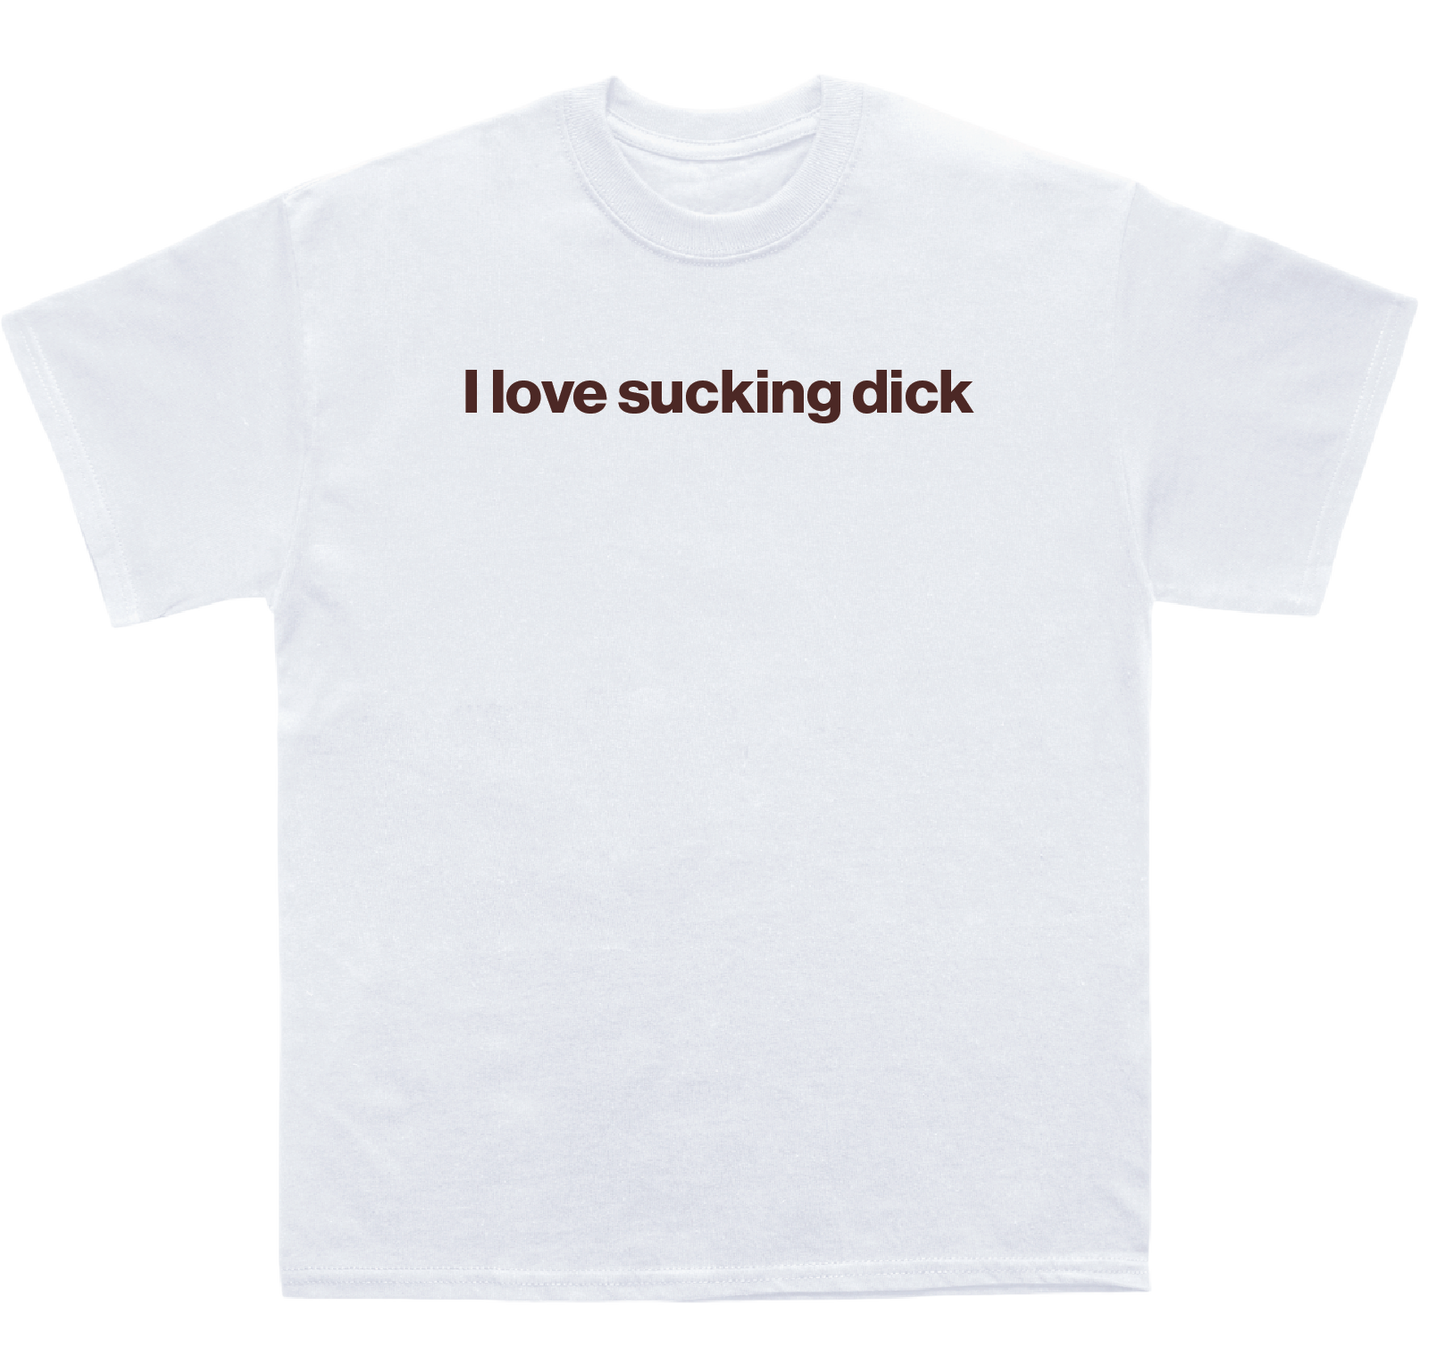 I love sucking dick shirt